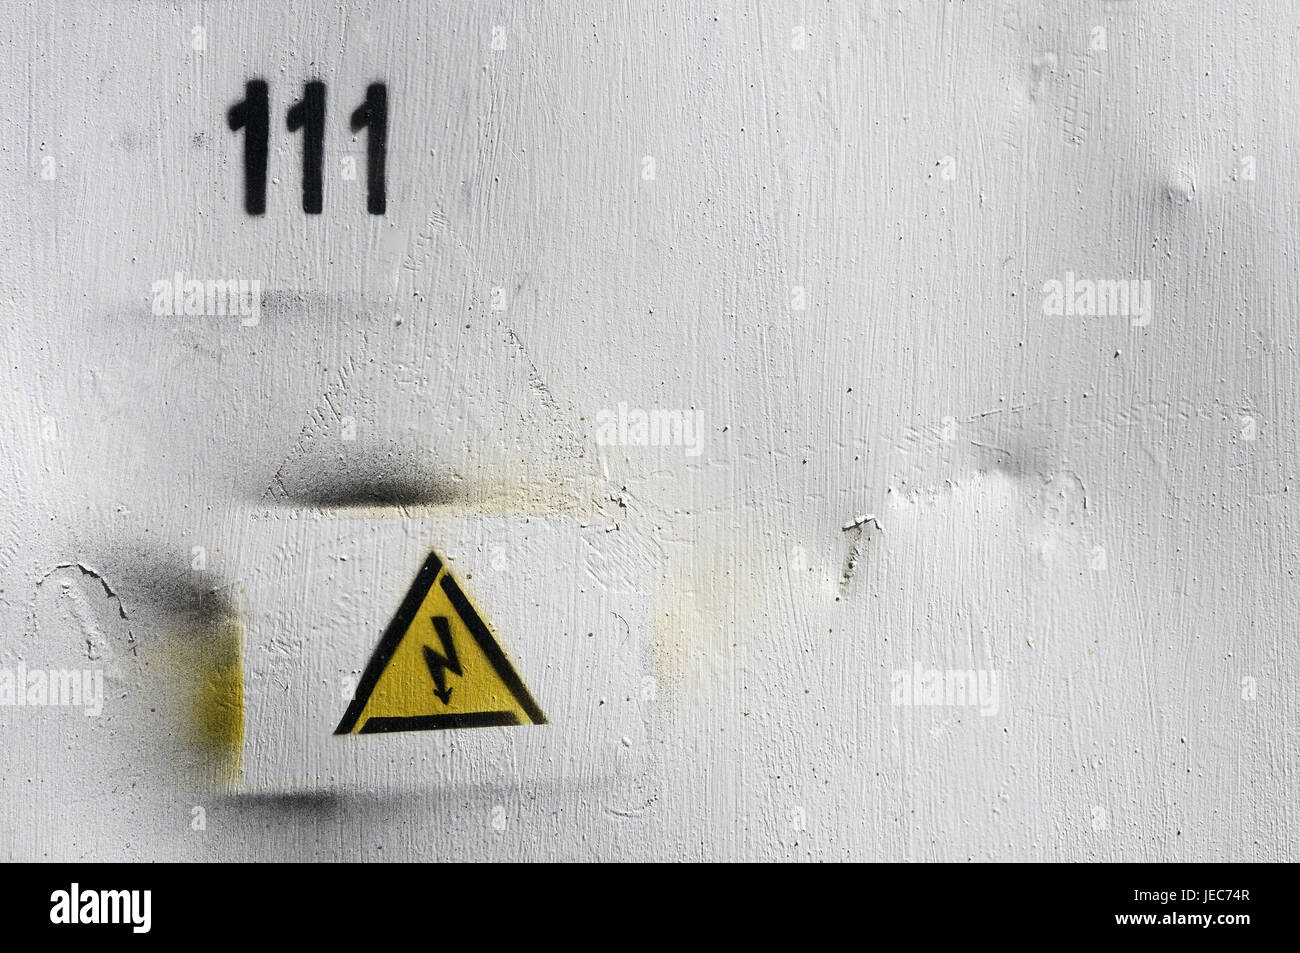 Wand ein Haus, Warnschild, Konzeption, Warnung, Wand, Box, Lautsprecher, Blitz, Anzahl, 111, Haus Nummer, Tipp, Tipp Warnung, Gefahr, Stockfoto